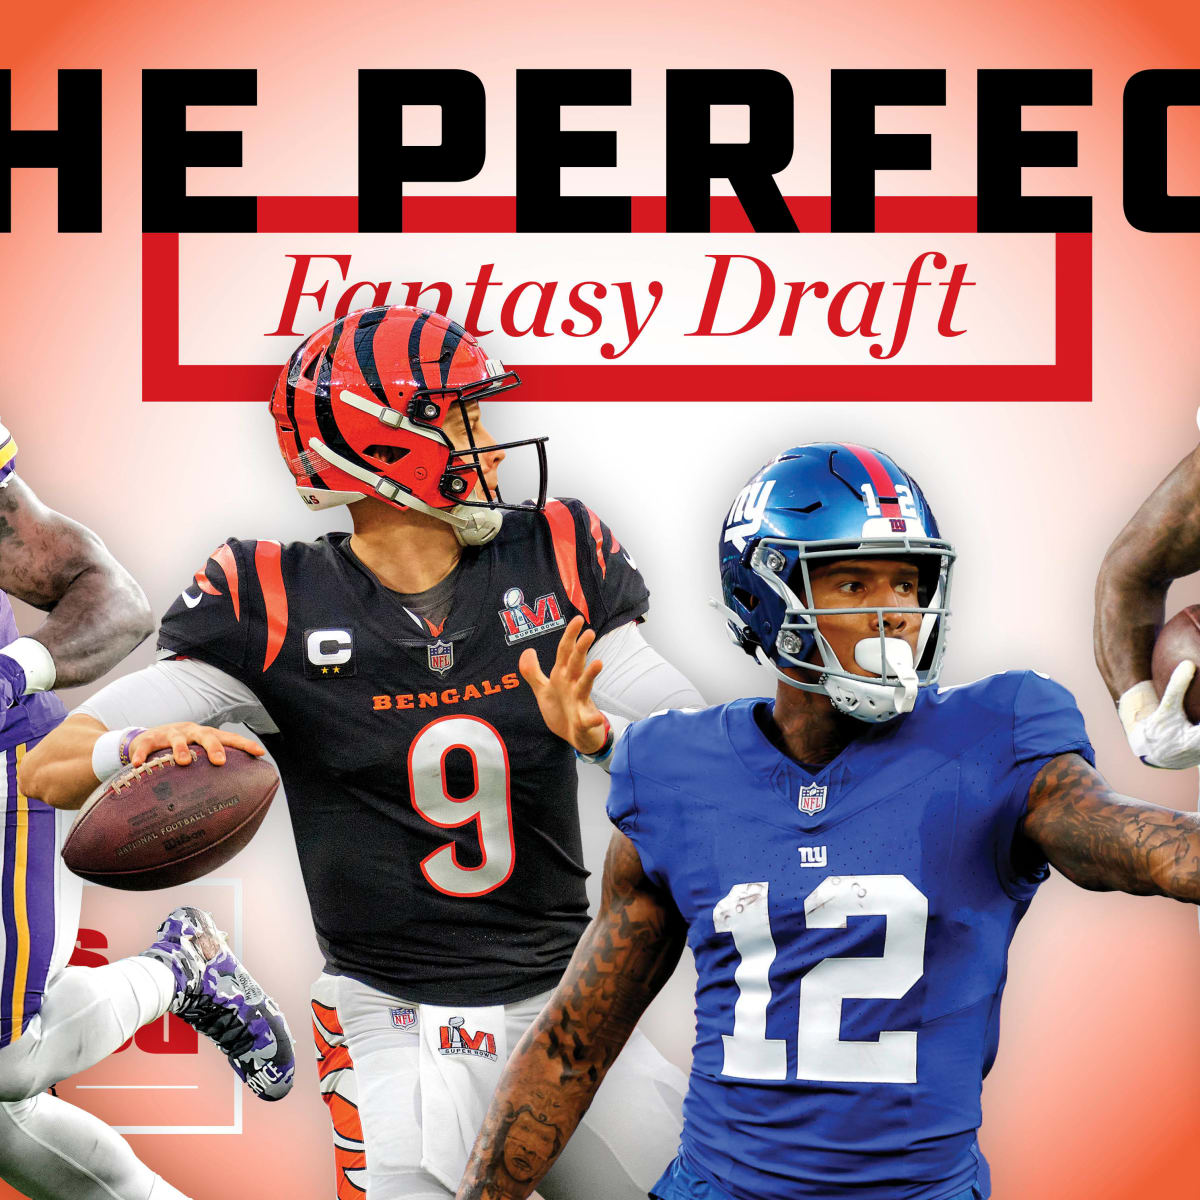 best value fantasy football draft picks